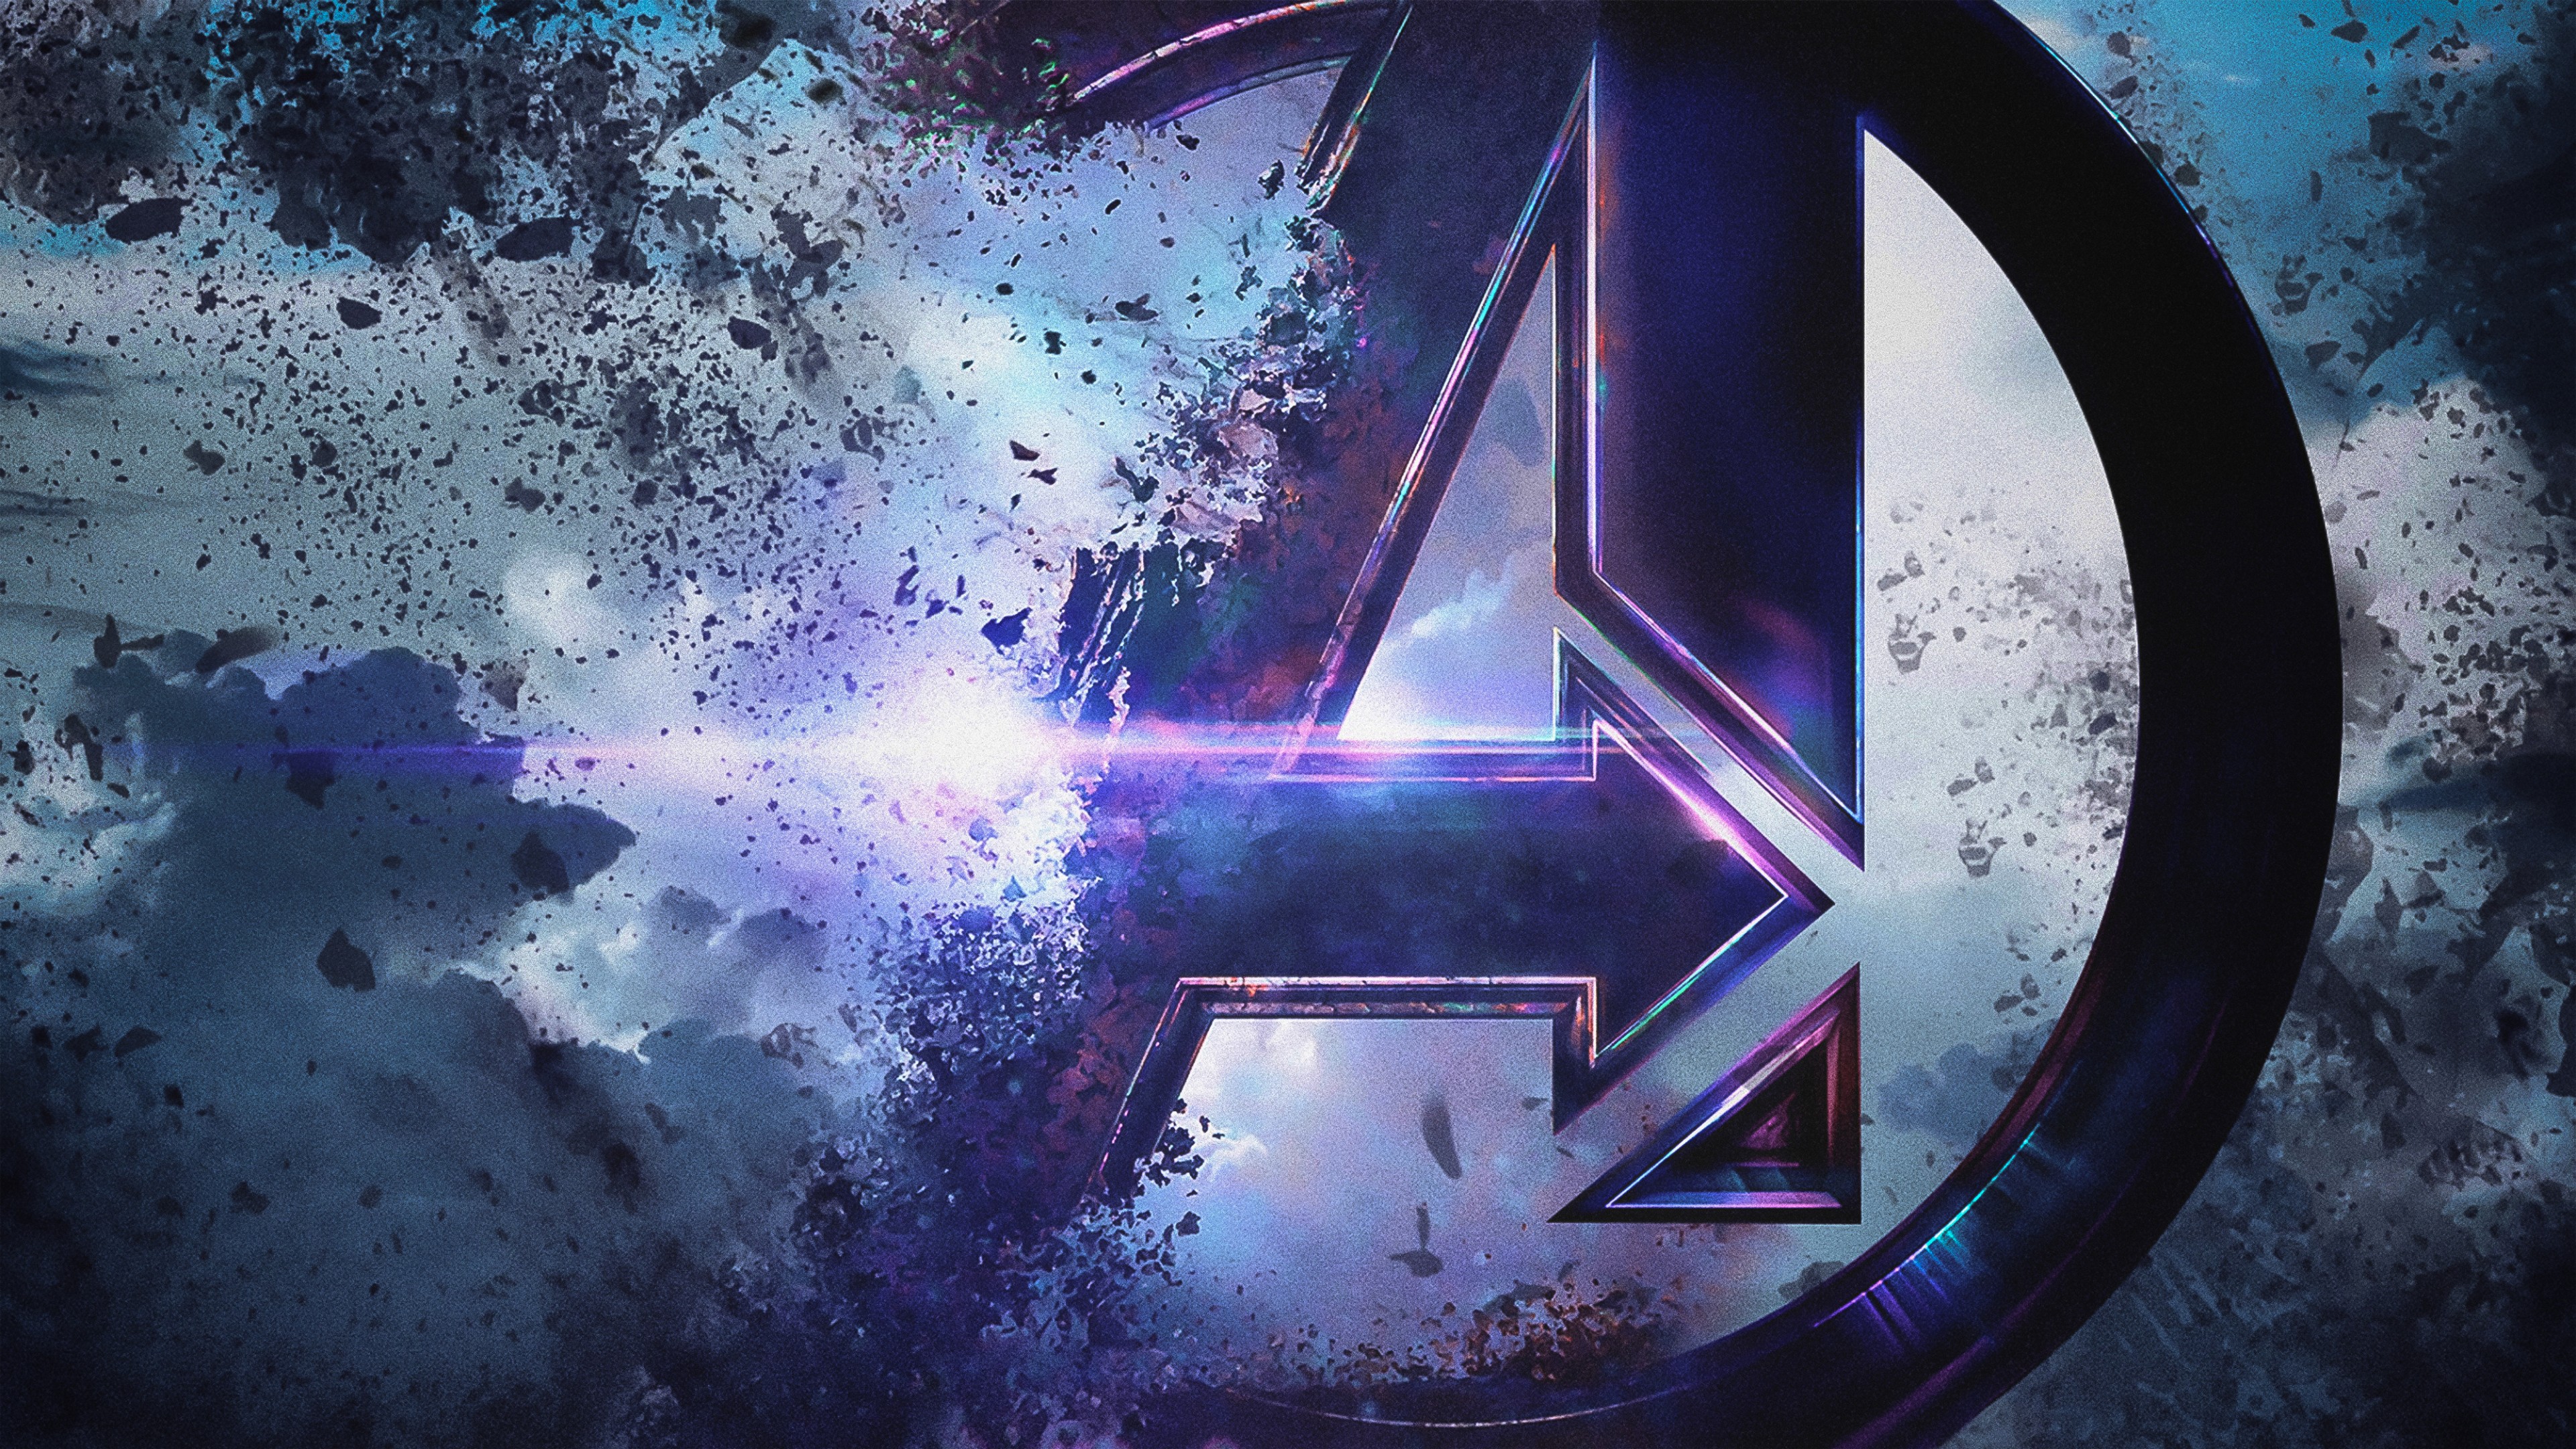 4k Wallpaper For Pc Avengers Endgame : 2560x1440 88 Avengers Endgame ...